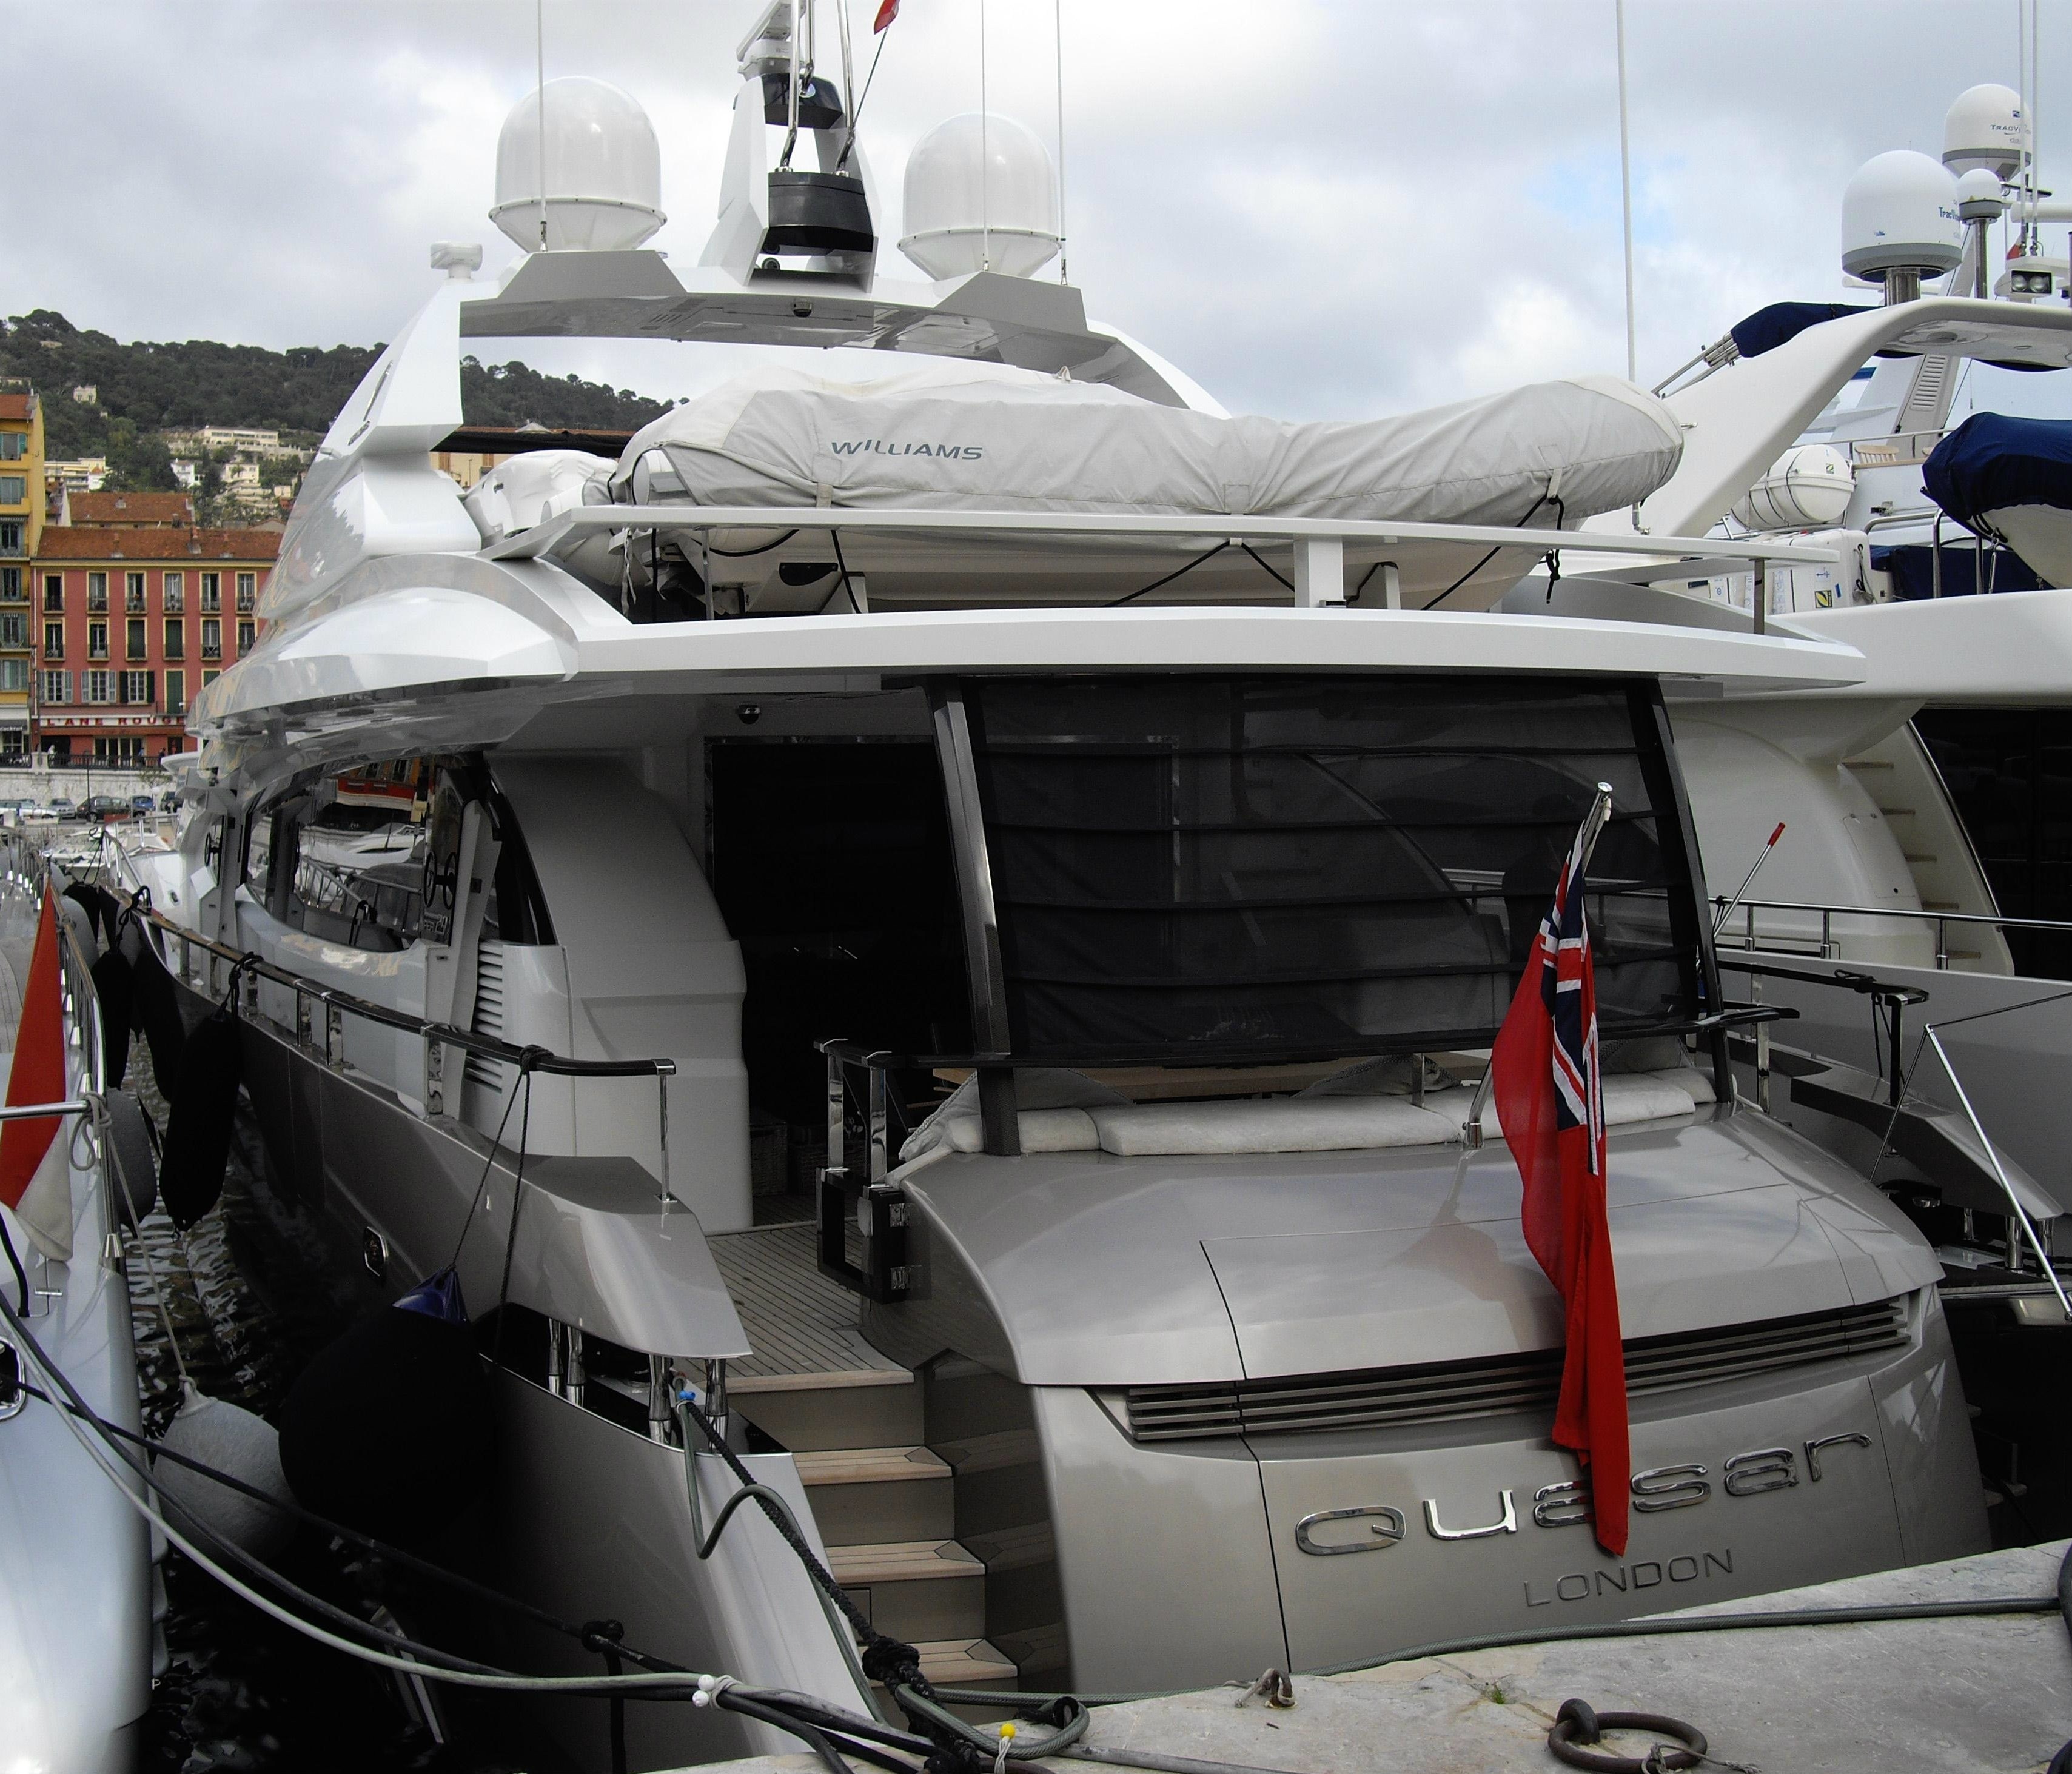 The 29m Yacht QUASAR